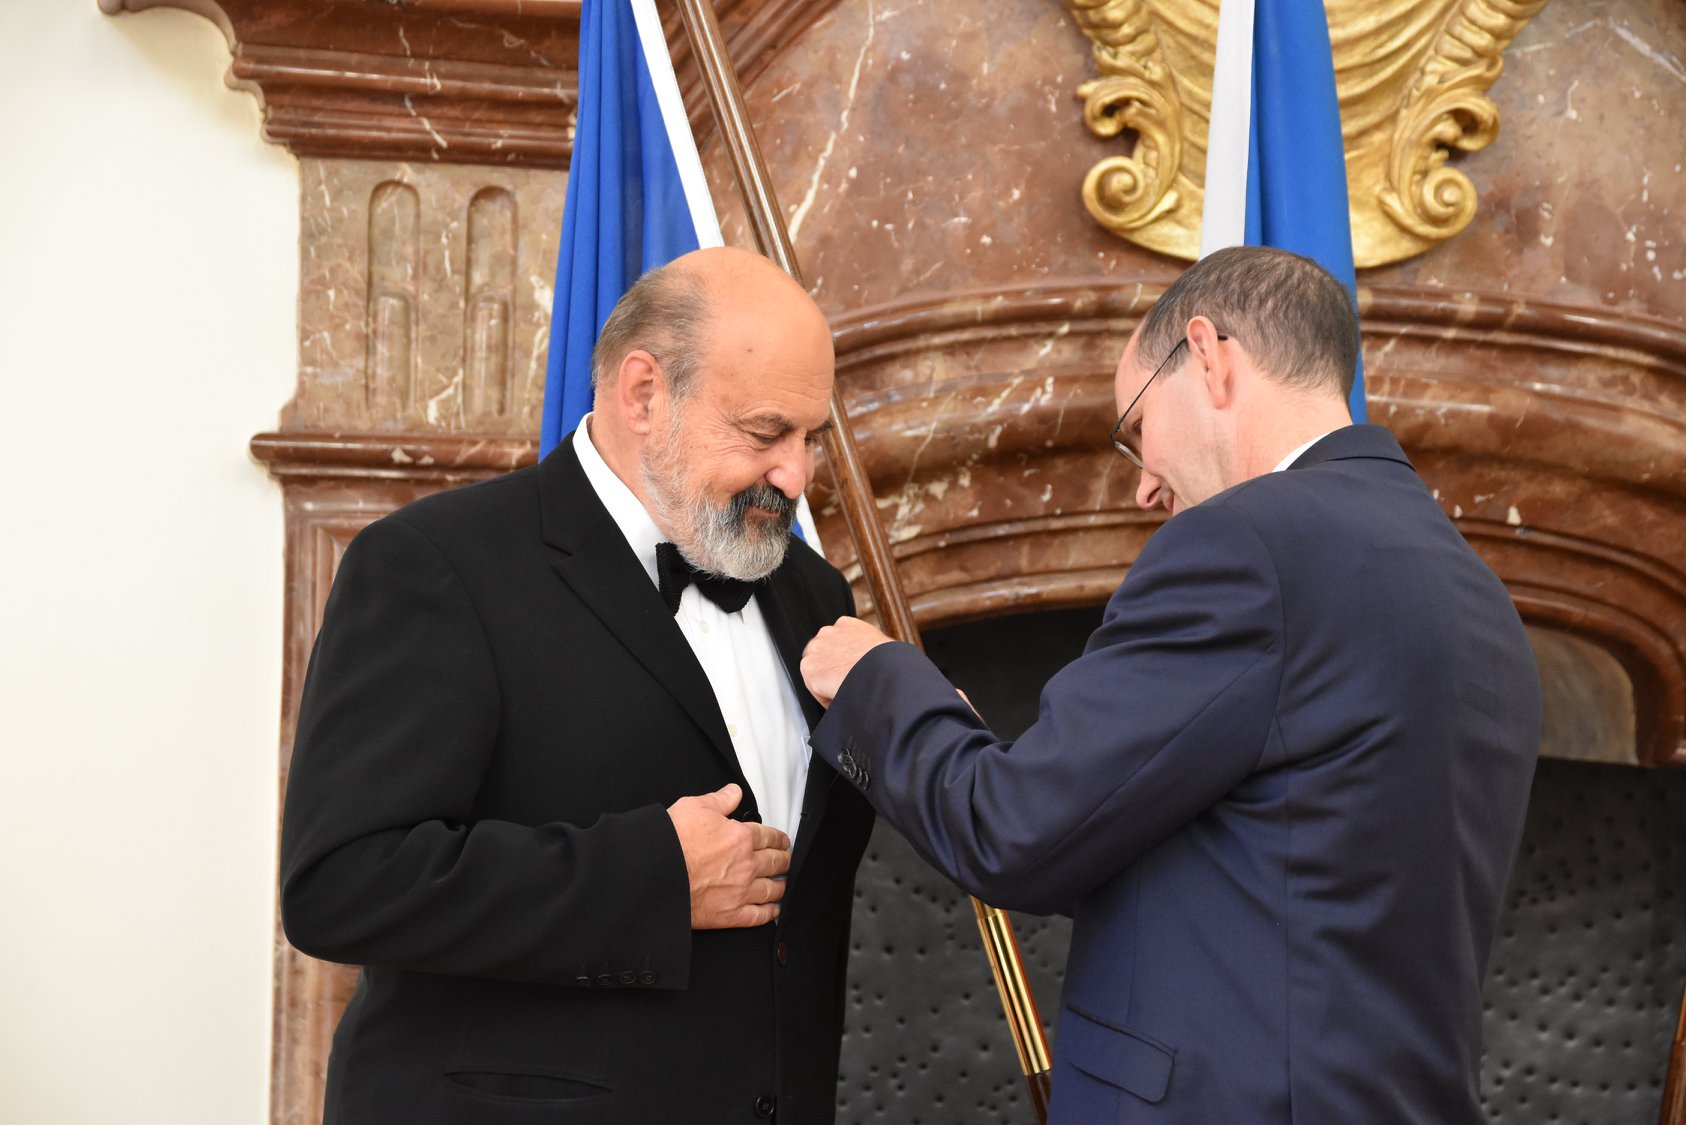 Kněz a teolog Tomáš Halík přijal vyznamenání z rukou německého velvyslance Christopha Isranga (Německé velvyslanectví v Praze)